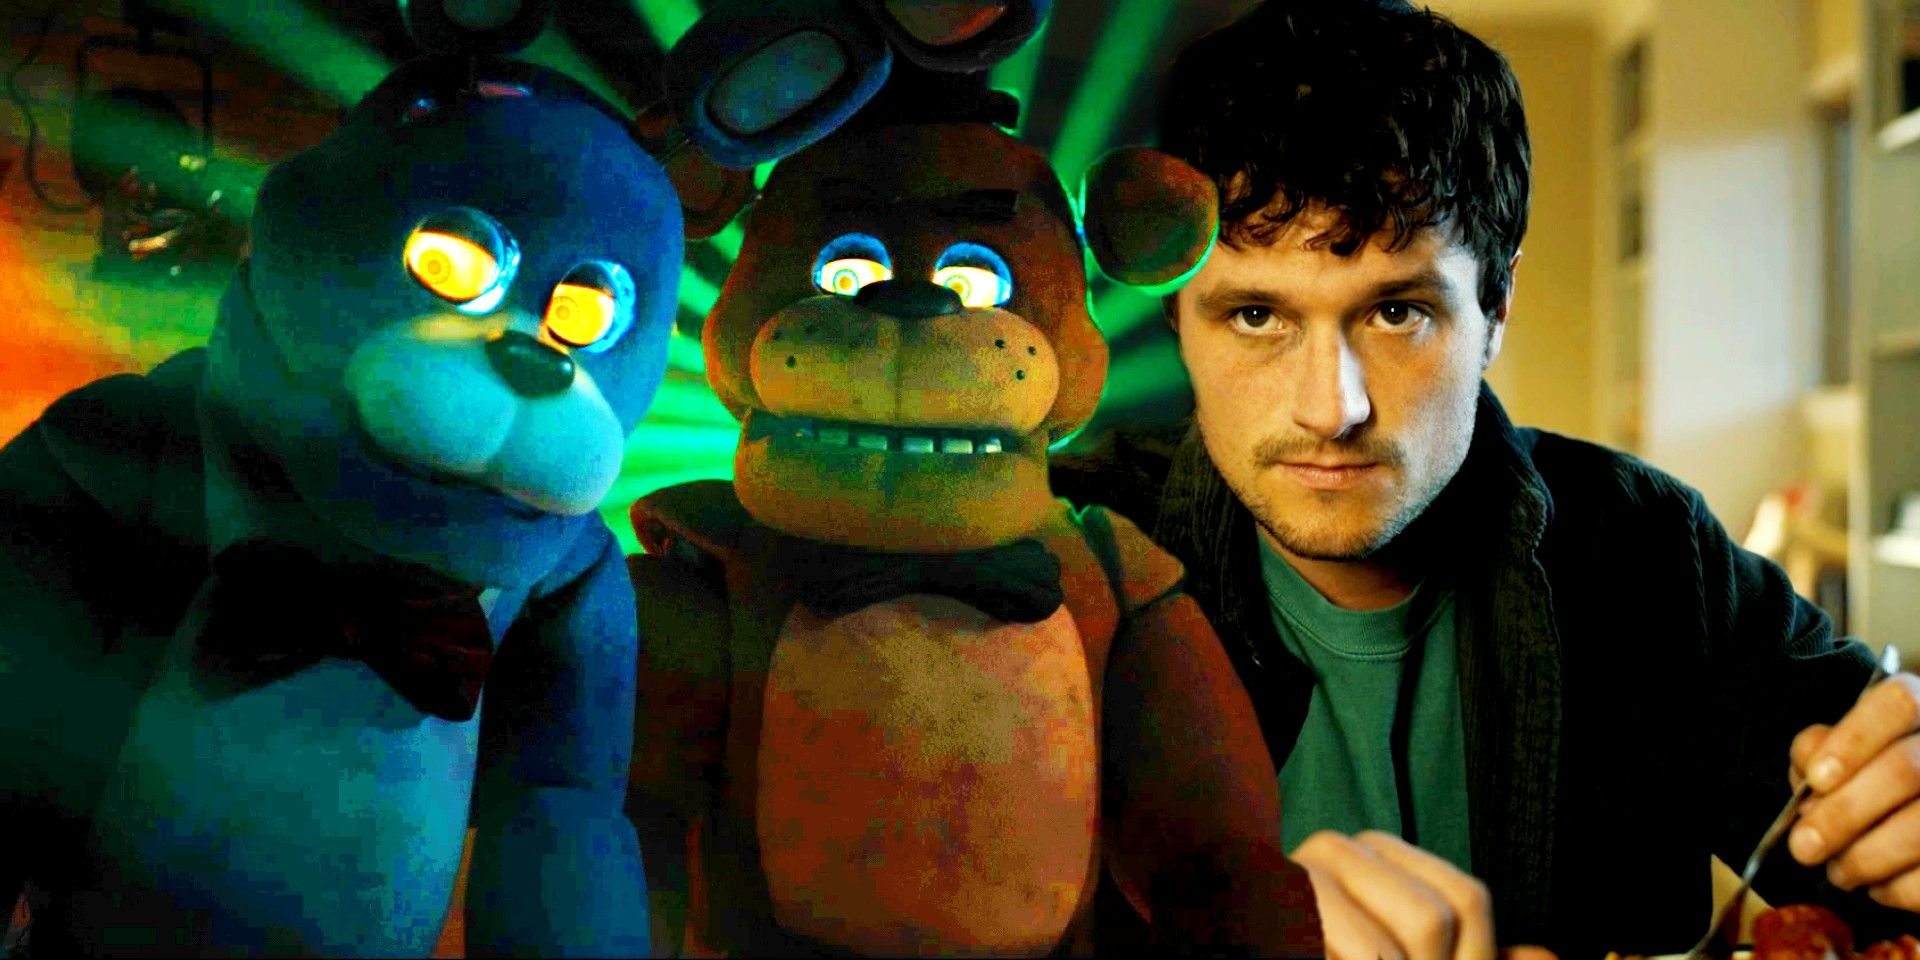 Five Nights At Freddy's“ tem maior bilheteria de estreia de terror do ano